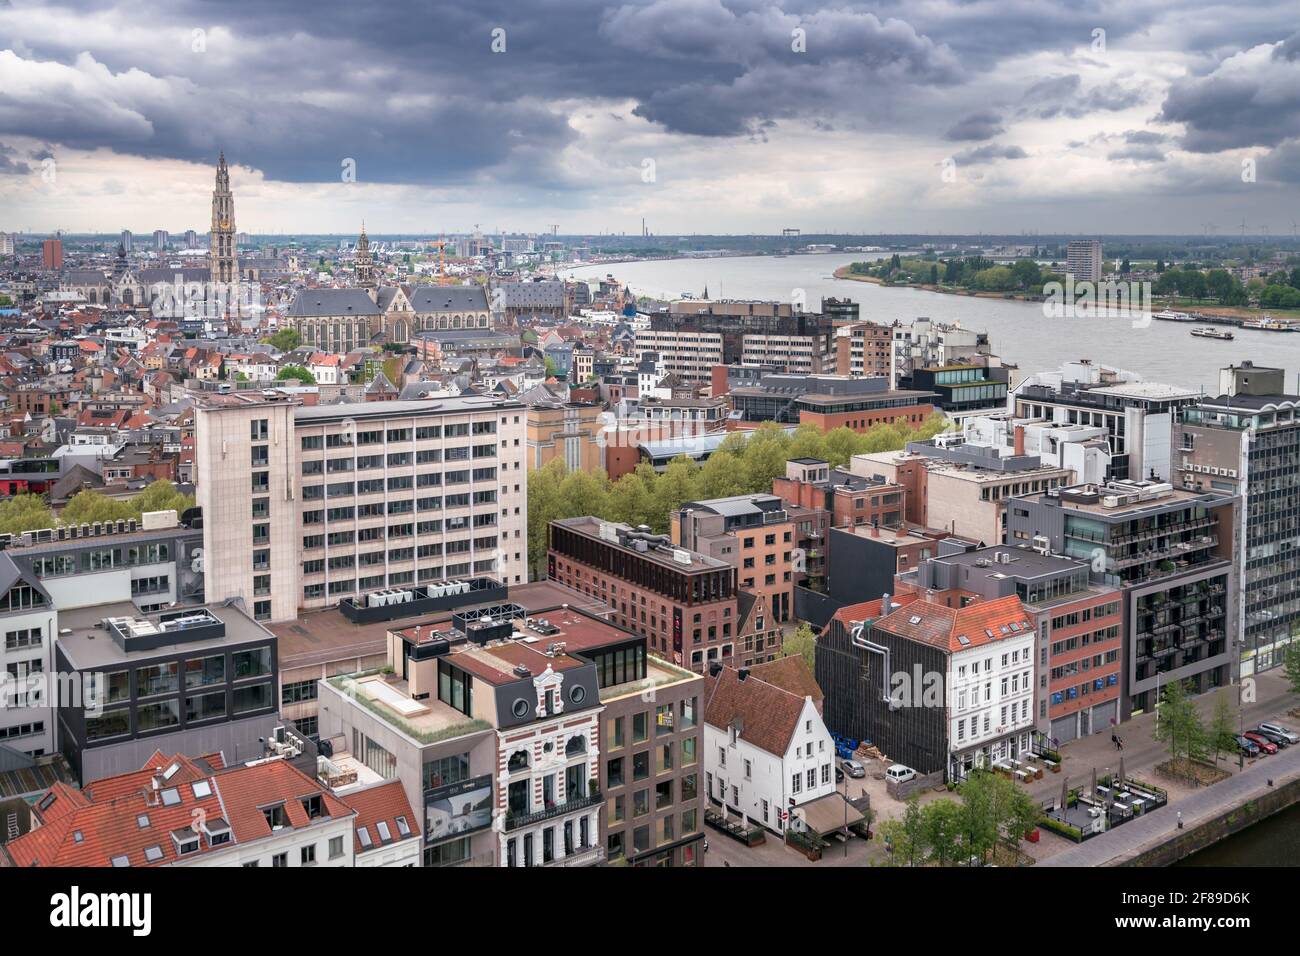 Antwerpen, Belgien - 04.29.2018: Blick von oben auf die Stadt an einem bewölkten, regnerischen Tag. Dramatische Wolken am Horizont. Fluss Schelde, Kathedrale unseres Burschen Stockfoto